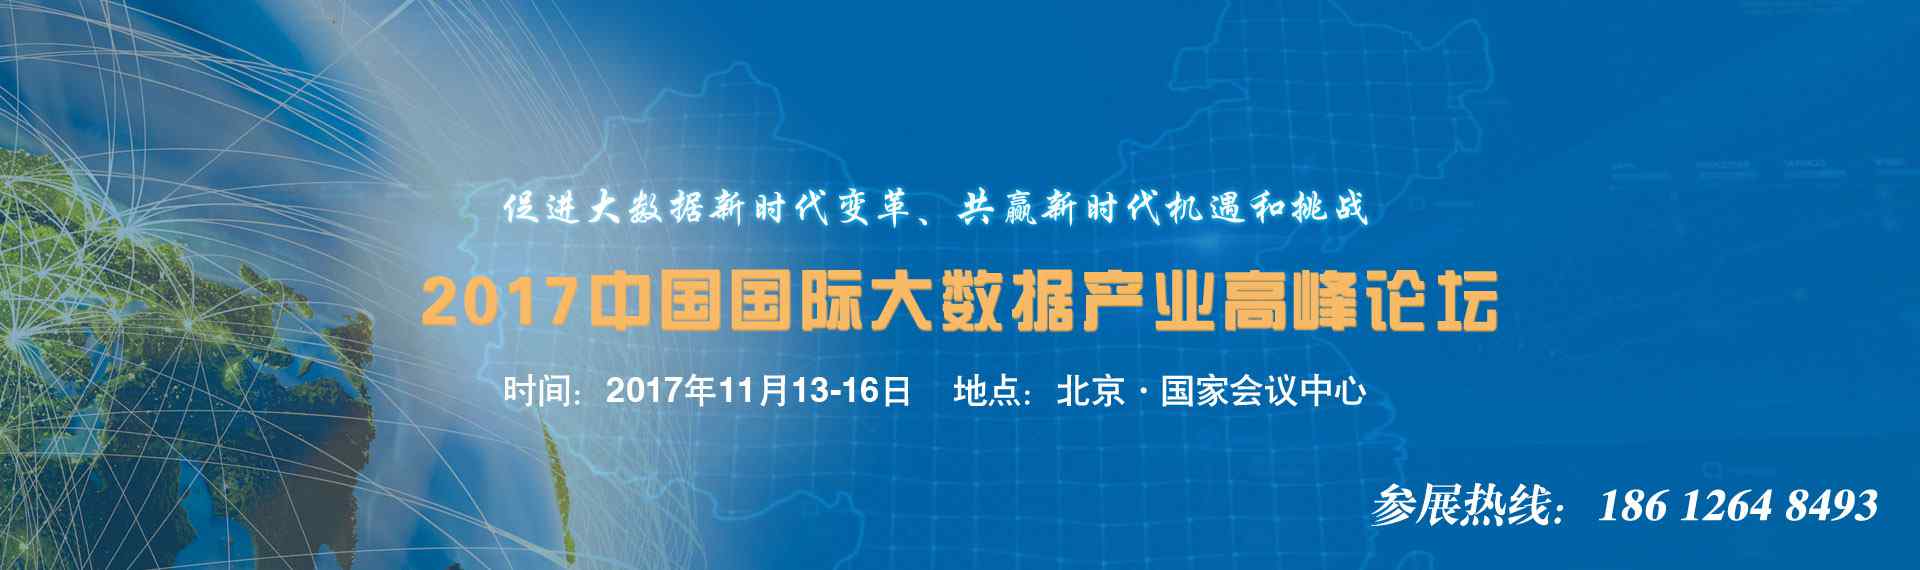 数博会2017放假 2017大数据博览会丨中国数博会